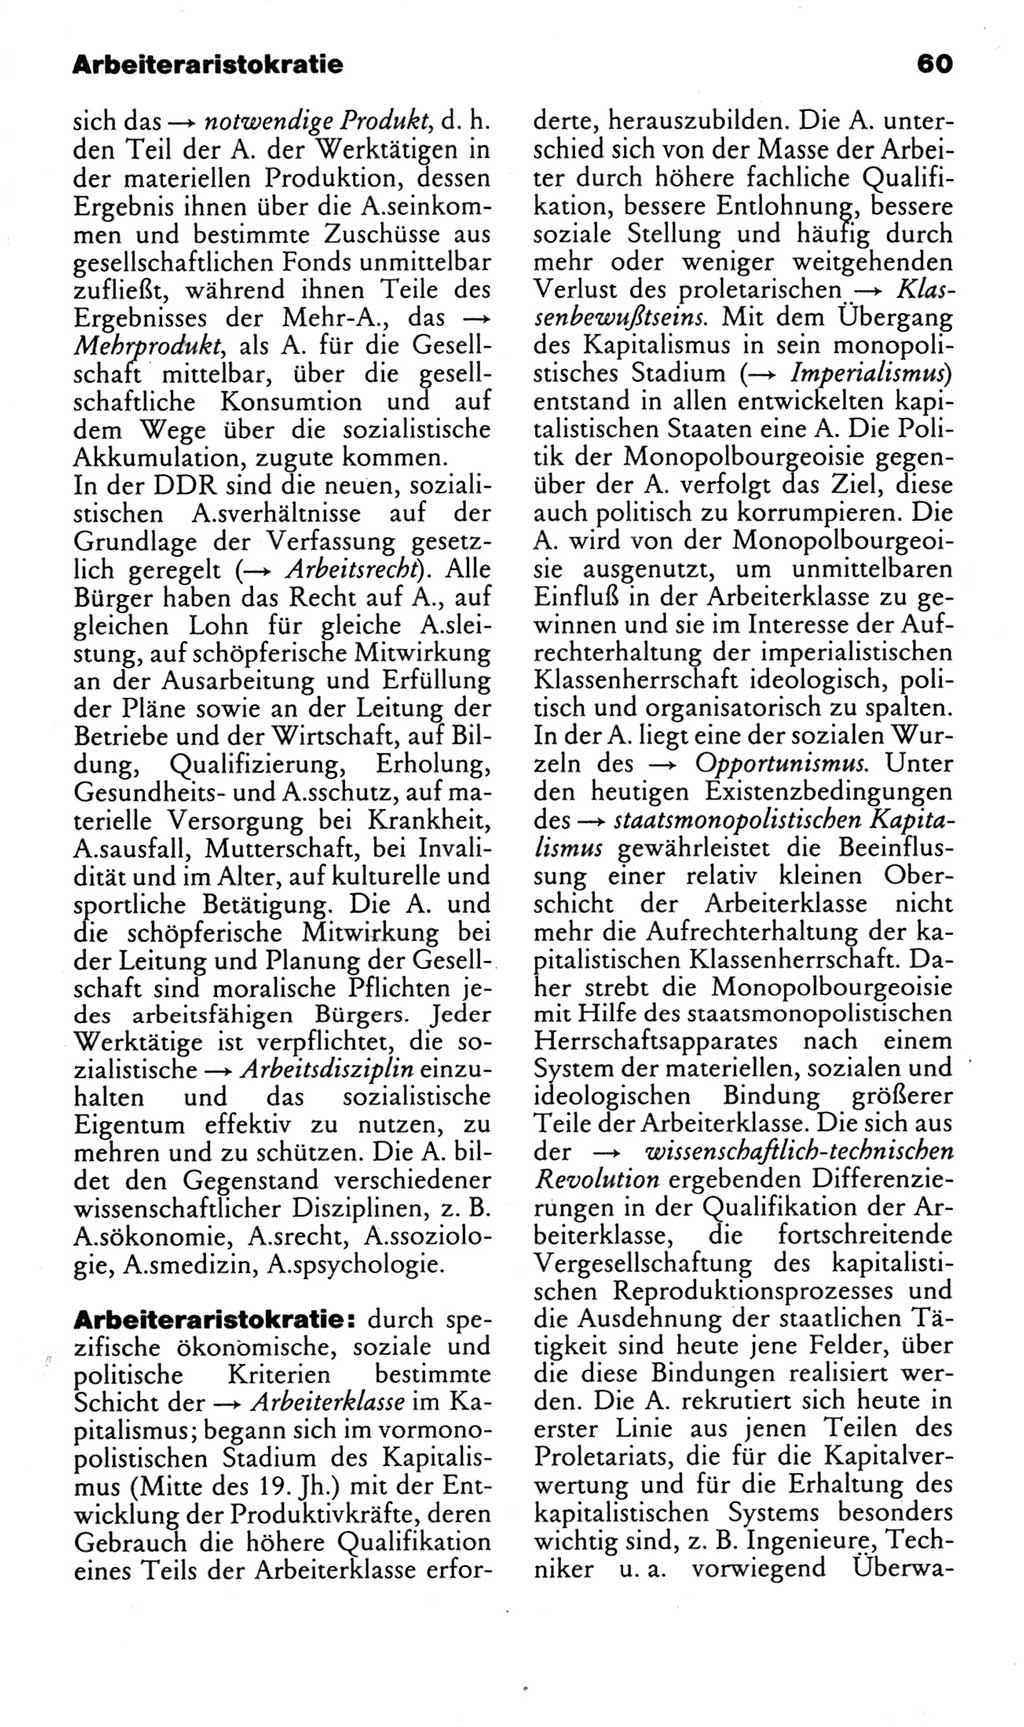 Kleines politisches Wörterbuch [Deutsche Demokratische Republik (DDR)] 1985, Seite 60 (Kl. pol. Wb. DDR 1985, S. 60)